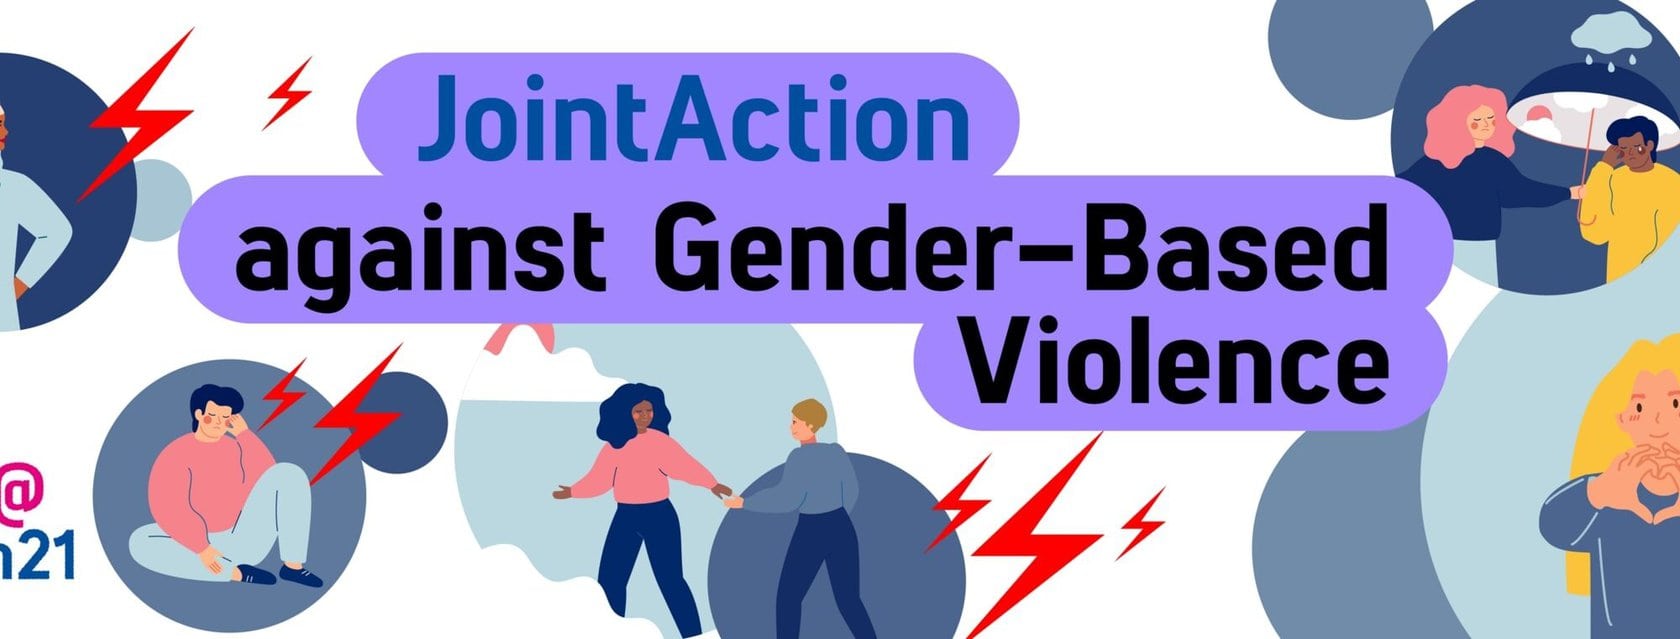 csm jointaction against gender based violence 02 9fa4834956